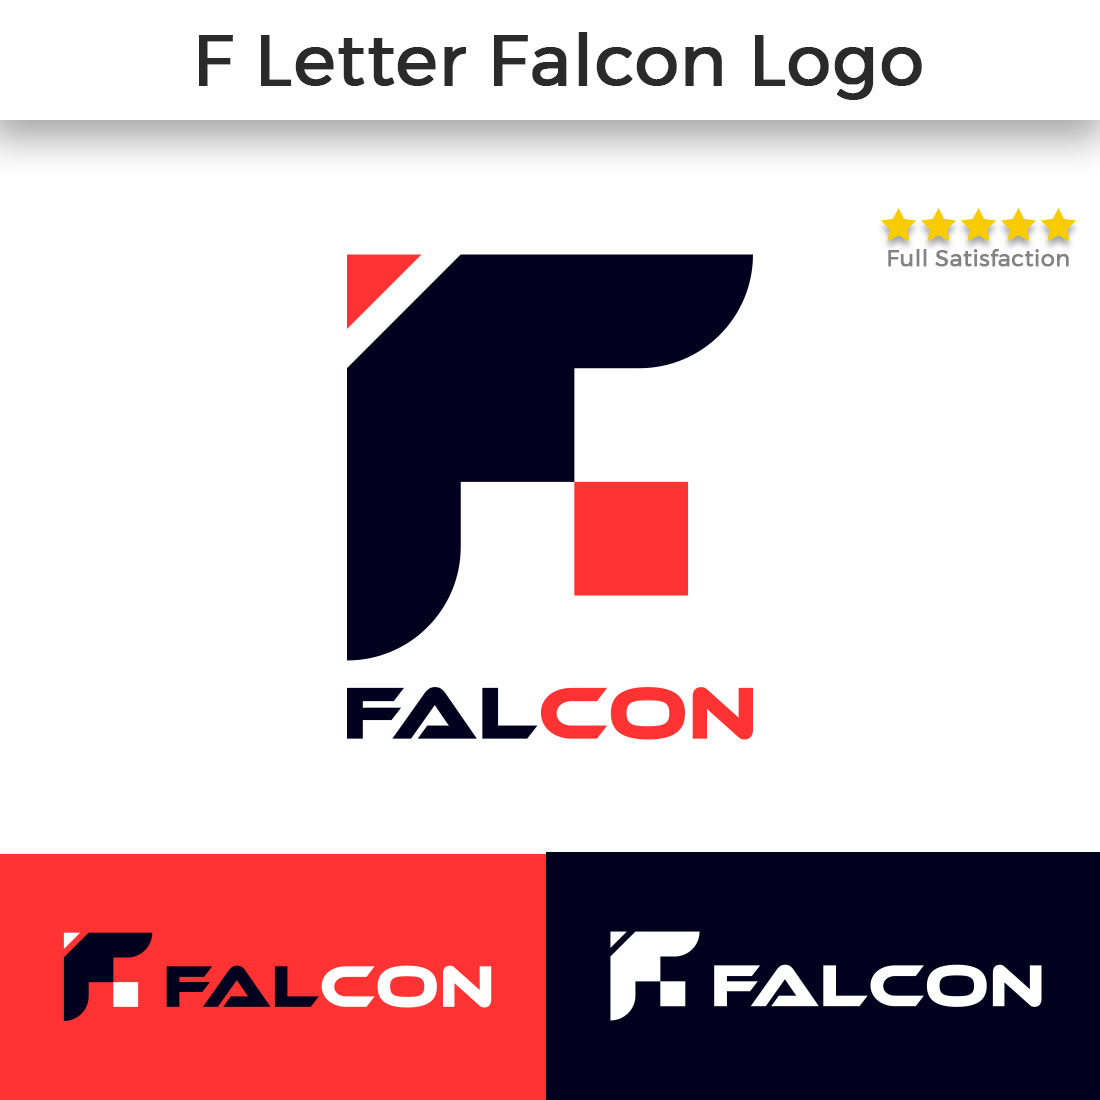 Falcon F Lettter Eagle Logo Design cover image.